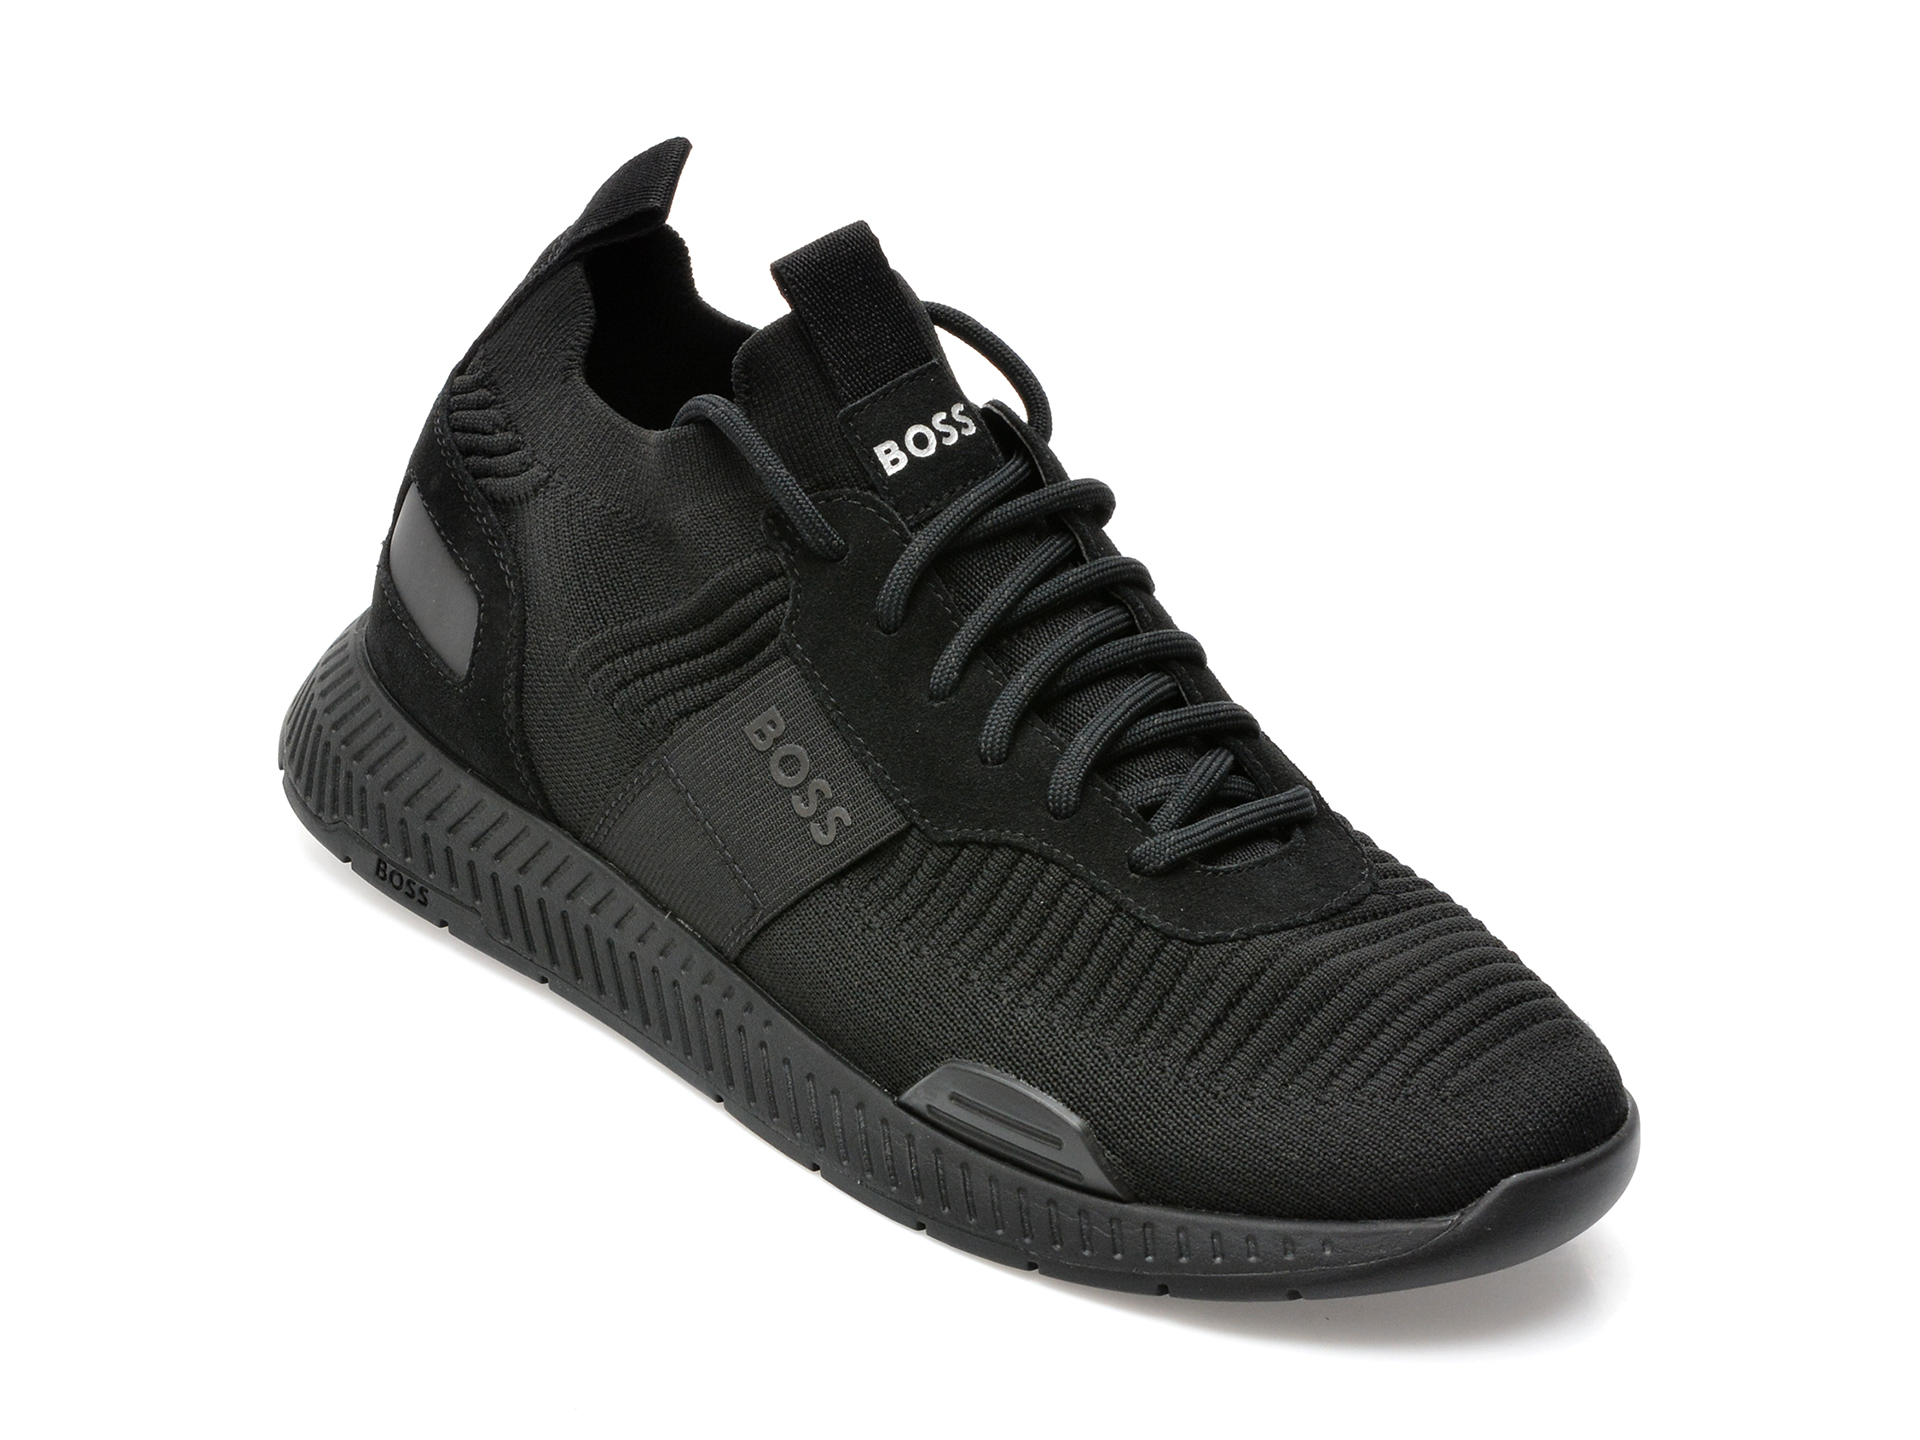 Pantofi sport HUGO BOSS negri, 596, din material textil si piele naturala /barbati/pantofi